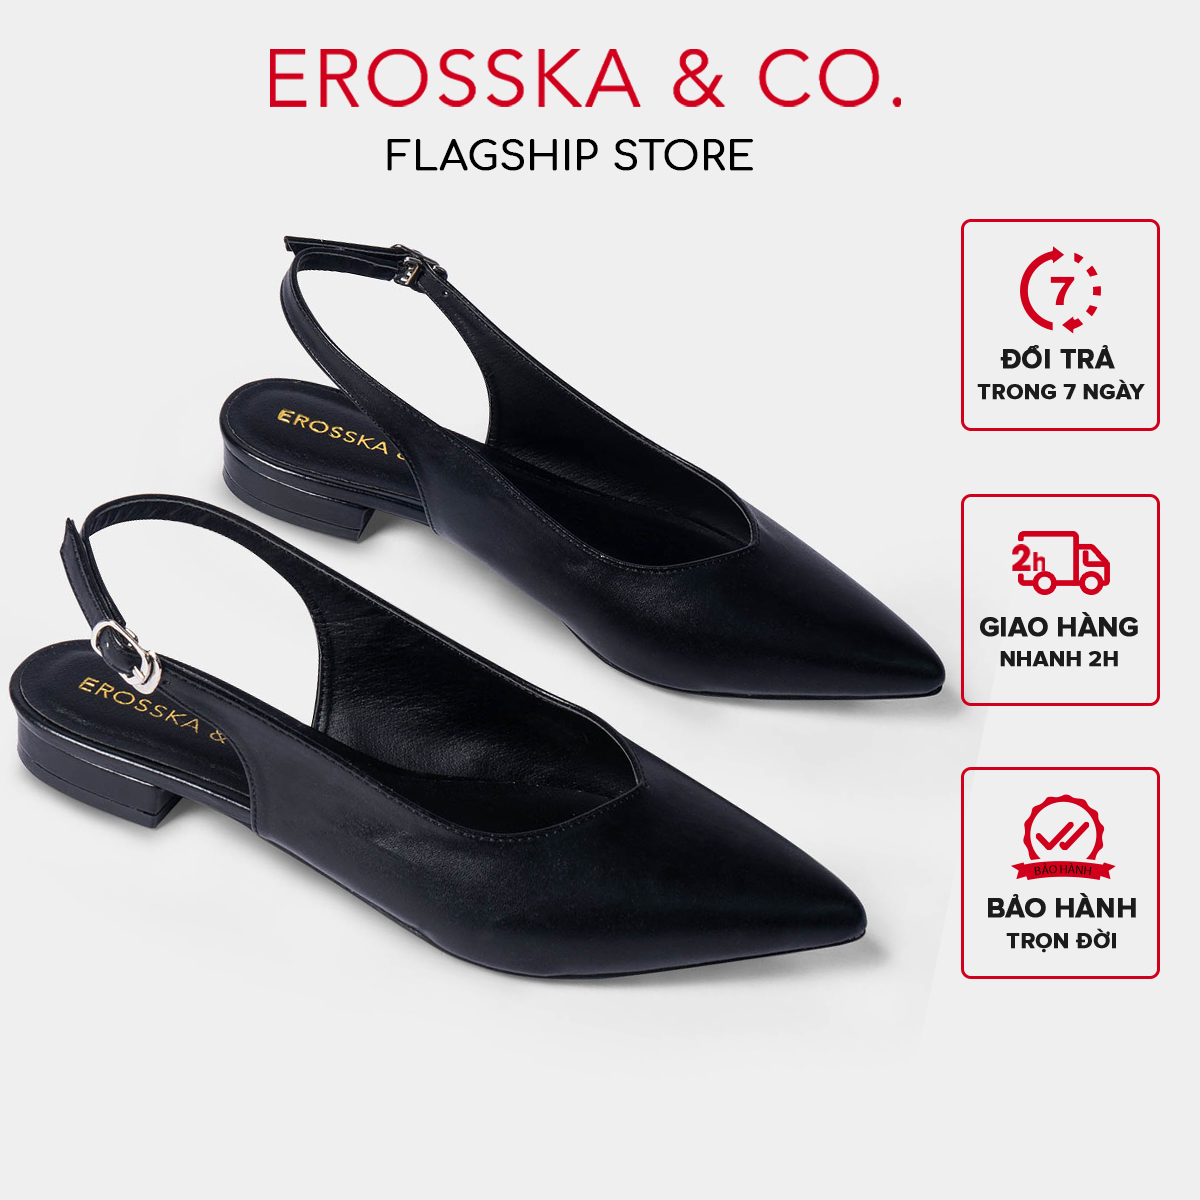 Giày cao gót slingback Erosska mũi nhọn cao 2cm thời trang kiểu dáng basic màu đen - EL001